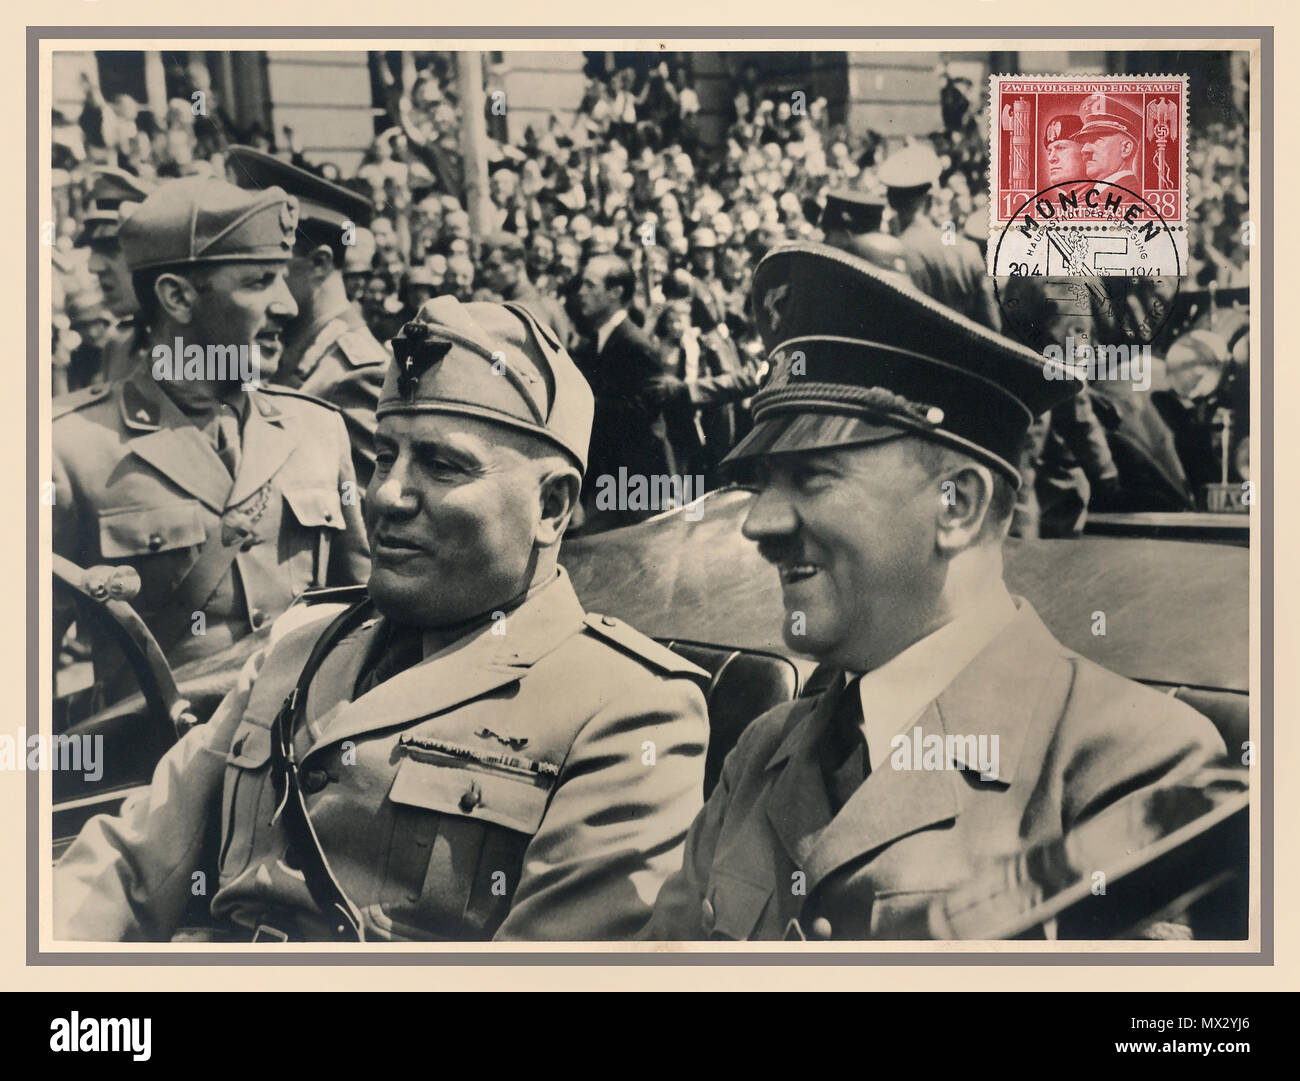 Vintage 1940 Carte postale sépia populaire allemande avec timbre commémoratif spécial Benito Mussolini et Adolf Hitler en ouvrir Mercedes Car Munich,Allemagne Juin 1940 PENDANT LA SECONDE GUERRE MONDIALE Banque D'Images